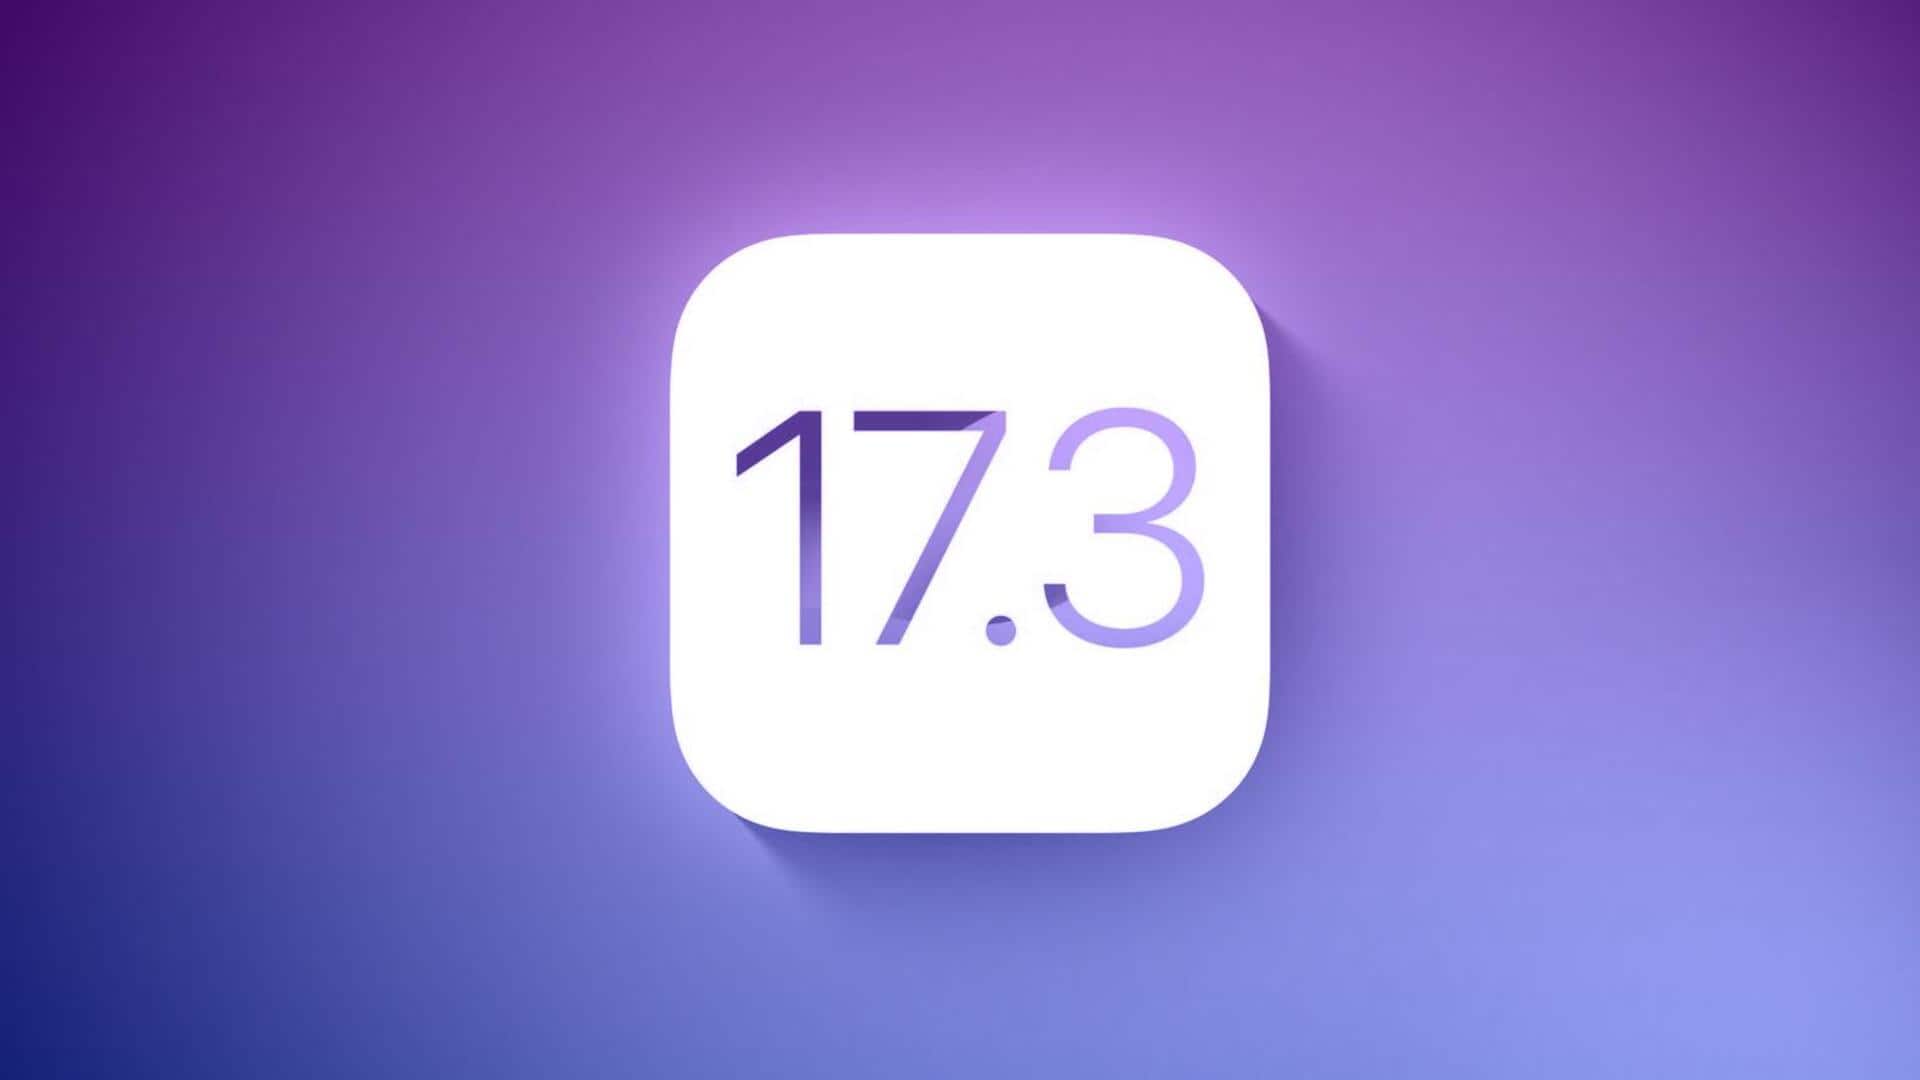 ऐपल इन फीचर्स के साथ इस महीने रोल आउट करेगी iOS 17.3 अपडेट